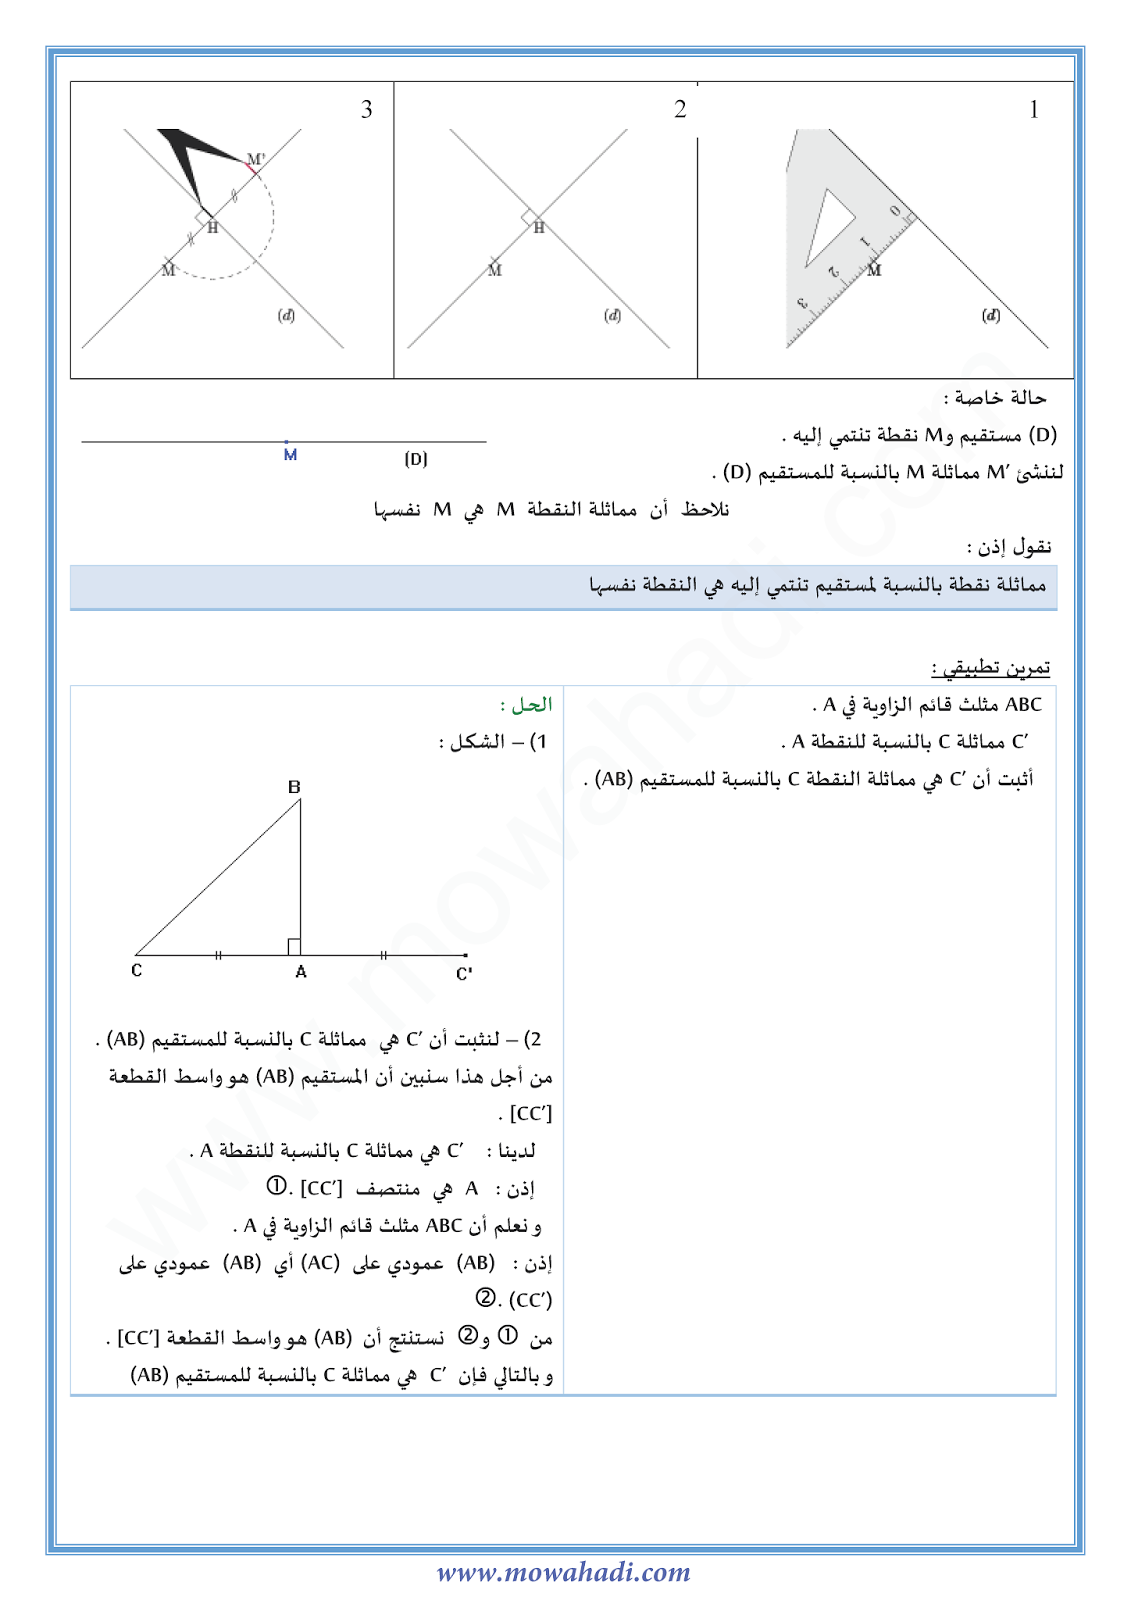 درس التماثل المحوري للسنة الثانية اعدادي في مادة الرياضيات 2-cours-math2_002